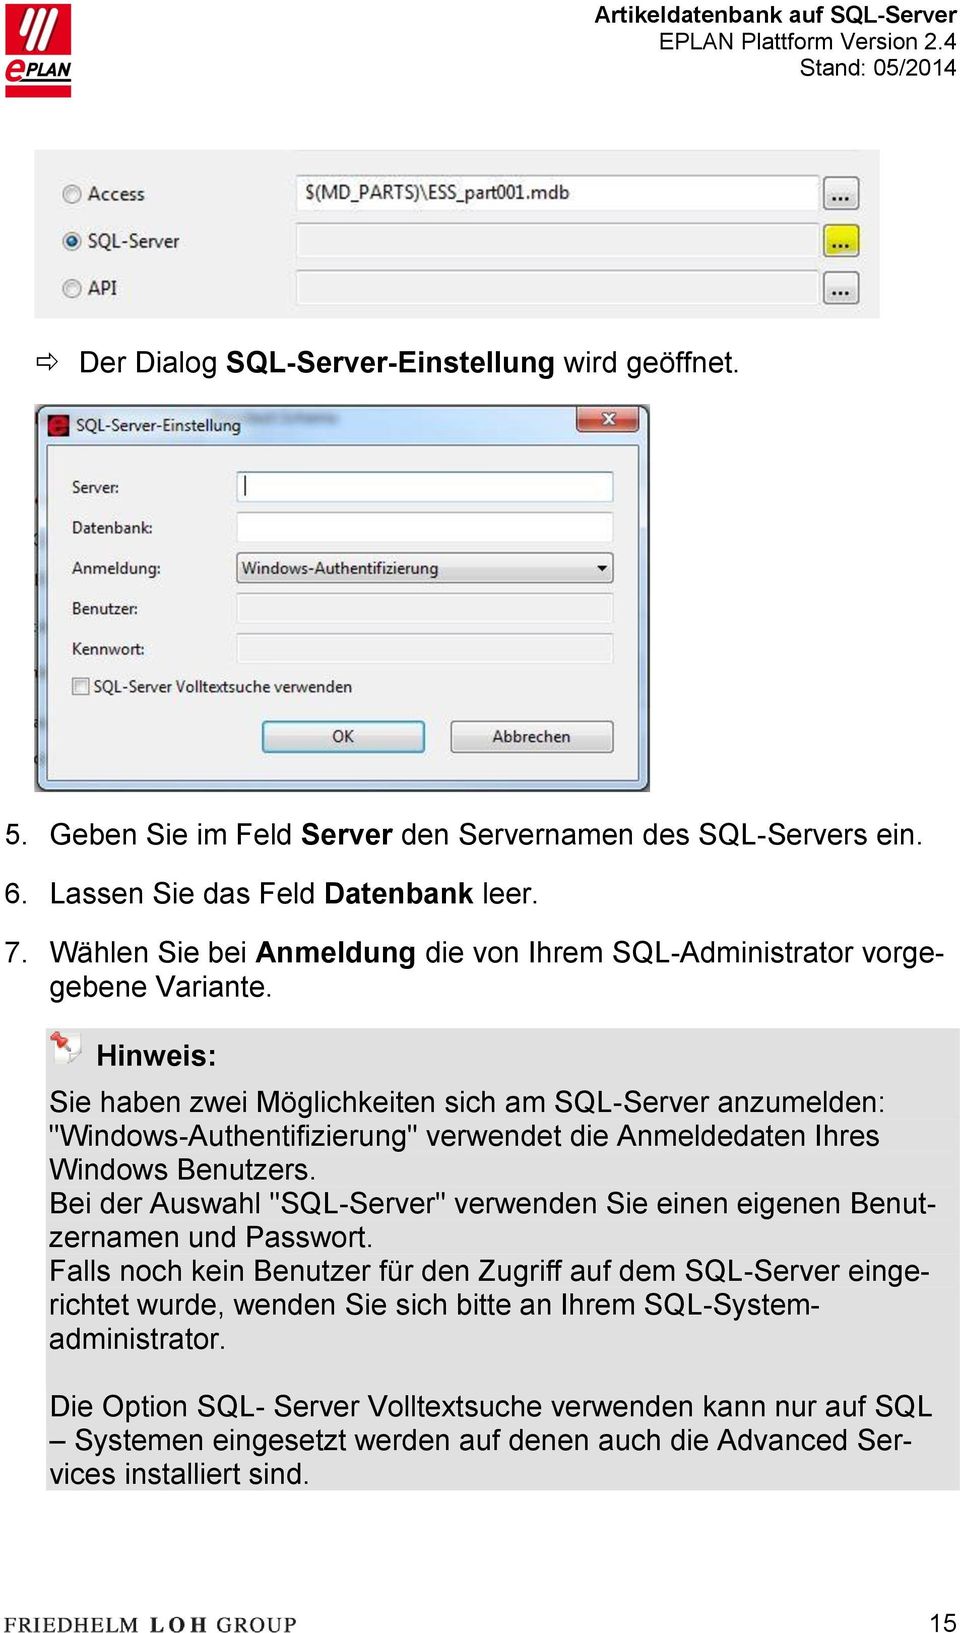 Hinweis: Sie haben zwei Möglichkeiten sich am SQL-Server anzumelden: "Windows-Authentifizierung" verwendet die Anmeldedaten Ihres Windows Benutzers.